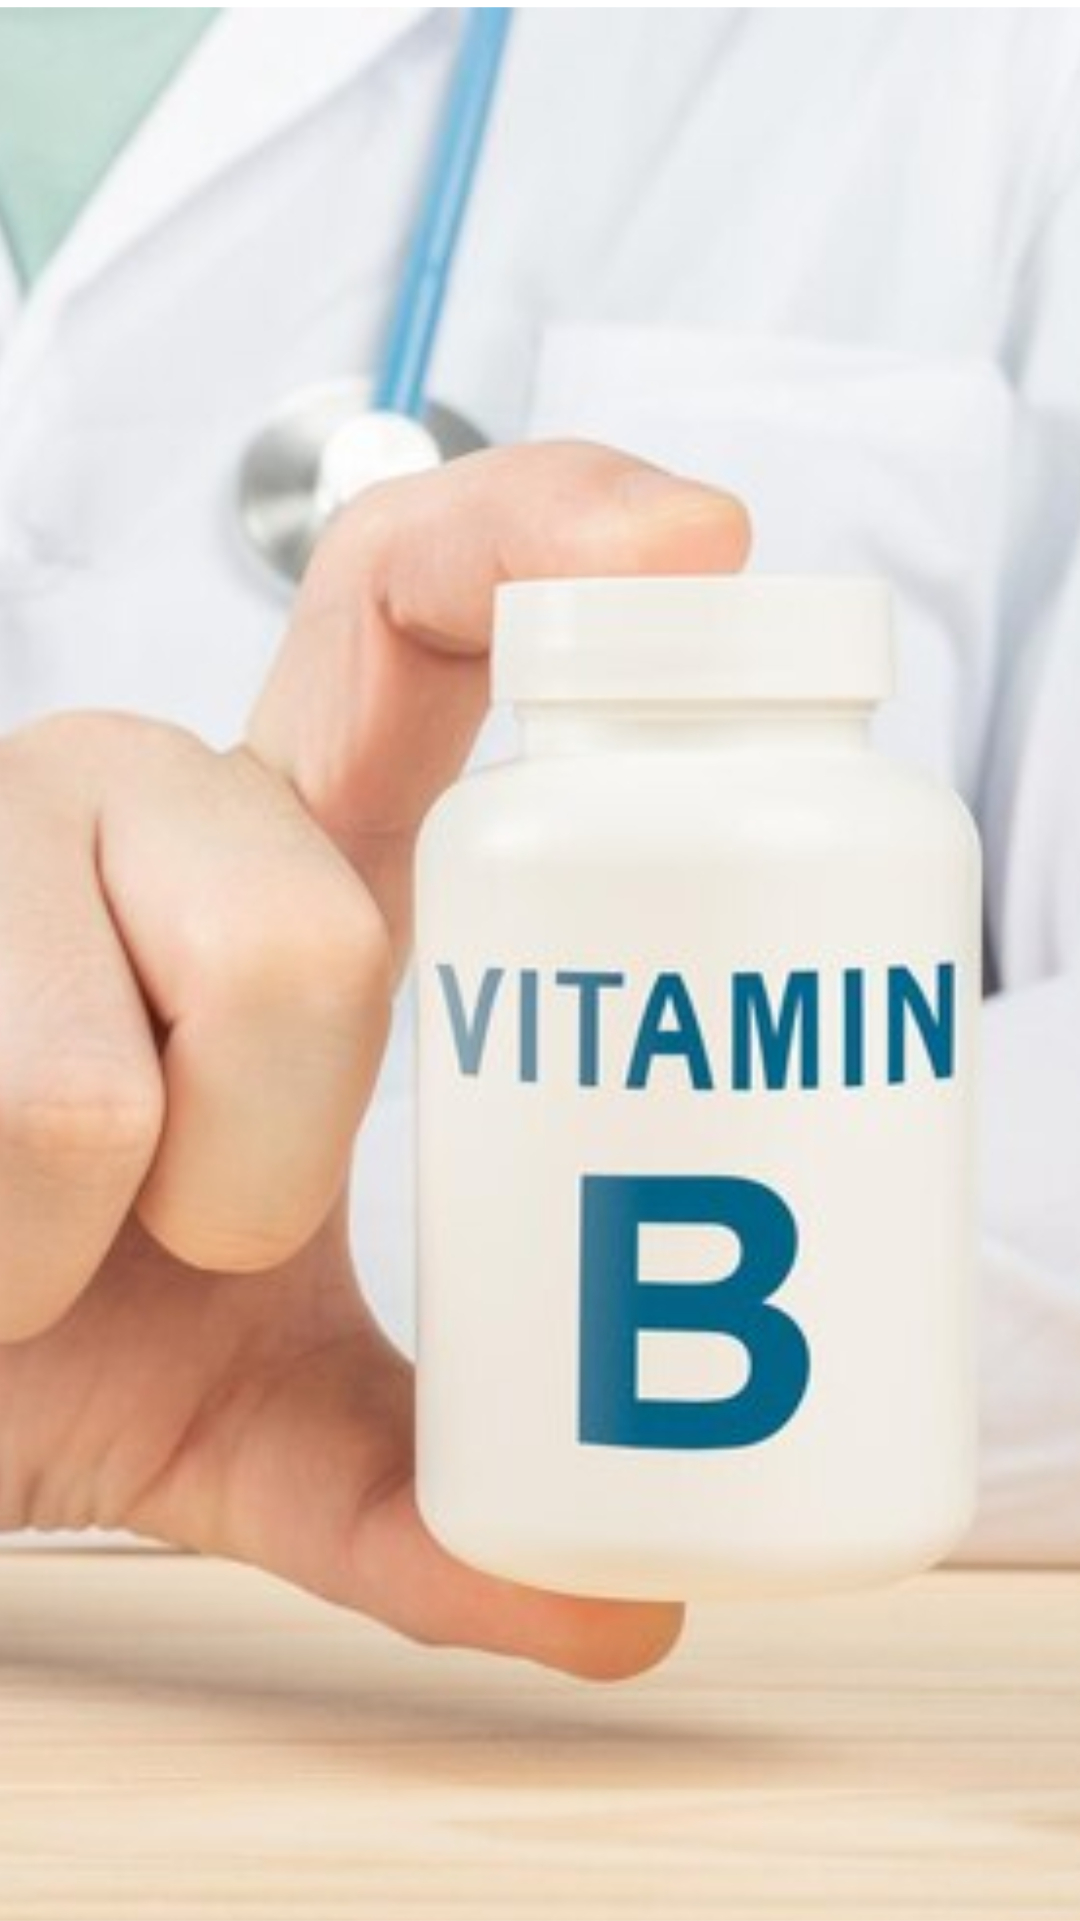 Vitamin B deficiency: विटामिन बी6 की कमी से बचने के लिए खाएं ये चीजें